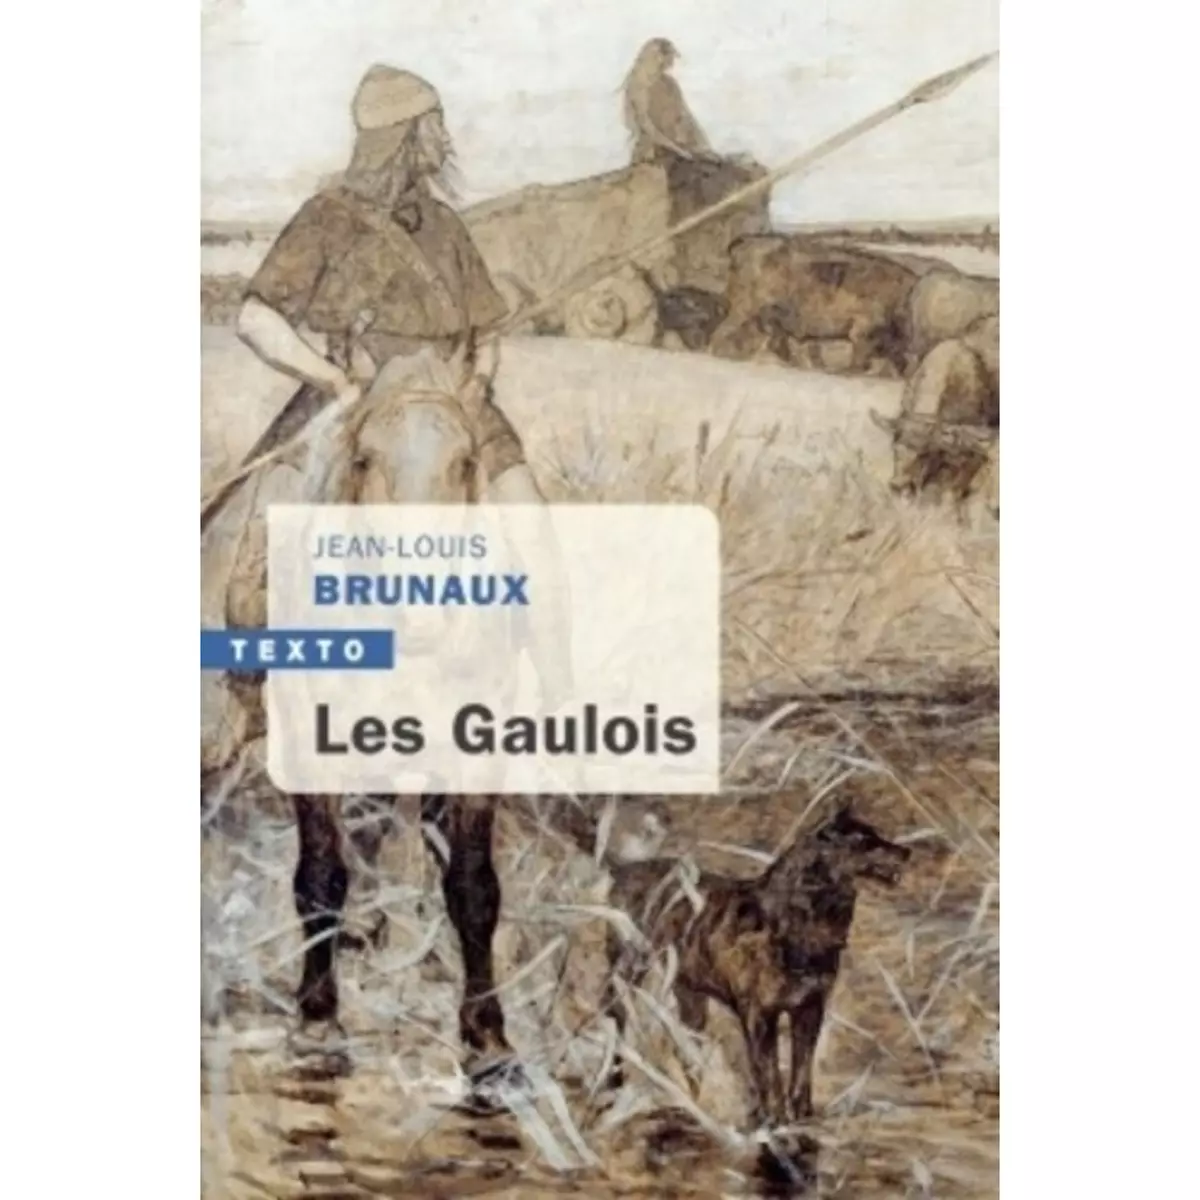  LES GAULOIS, Brunaux Jean-Louis